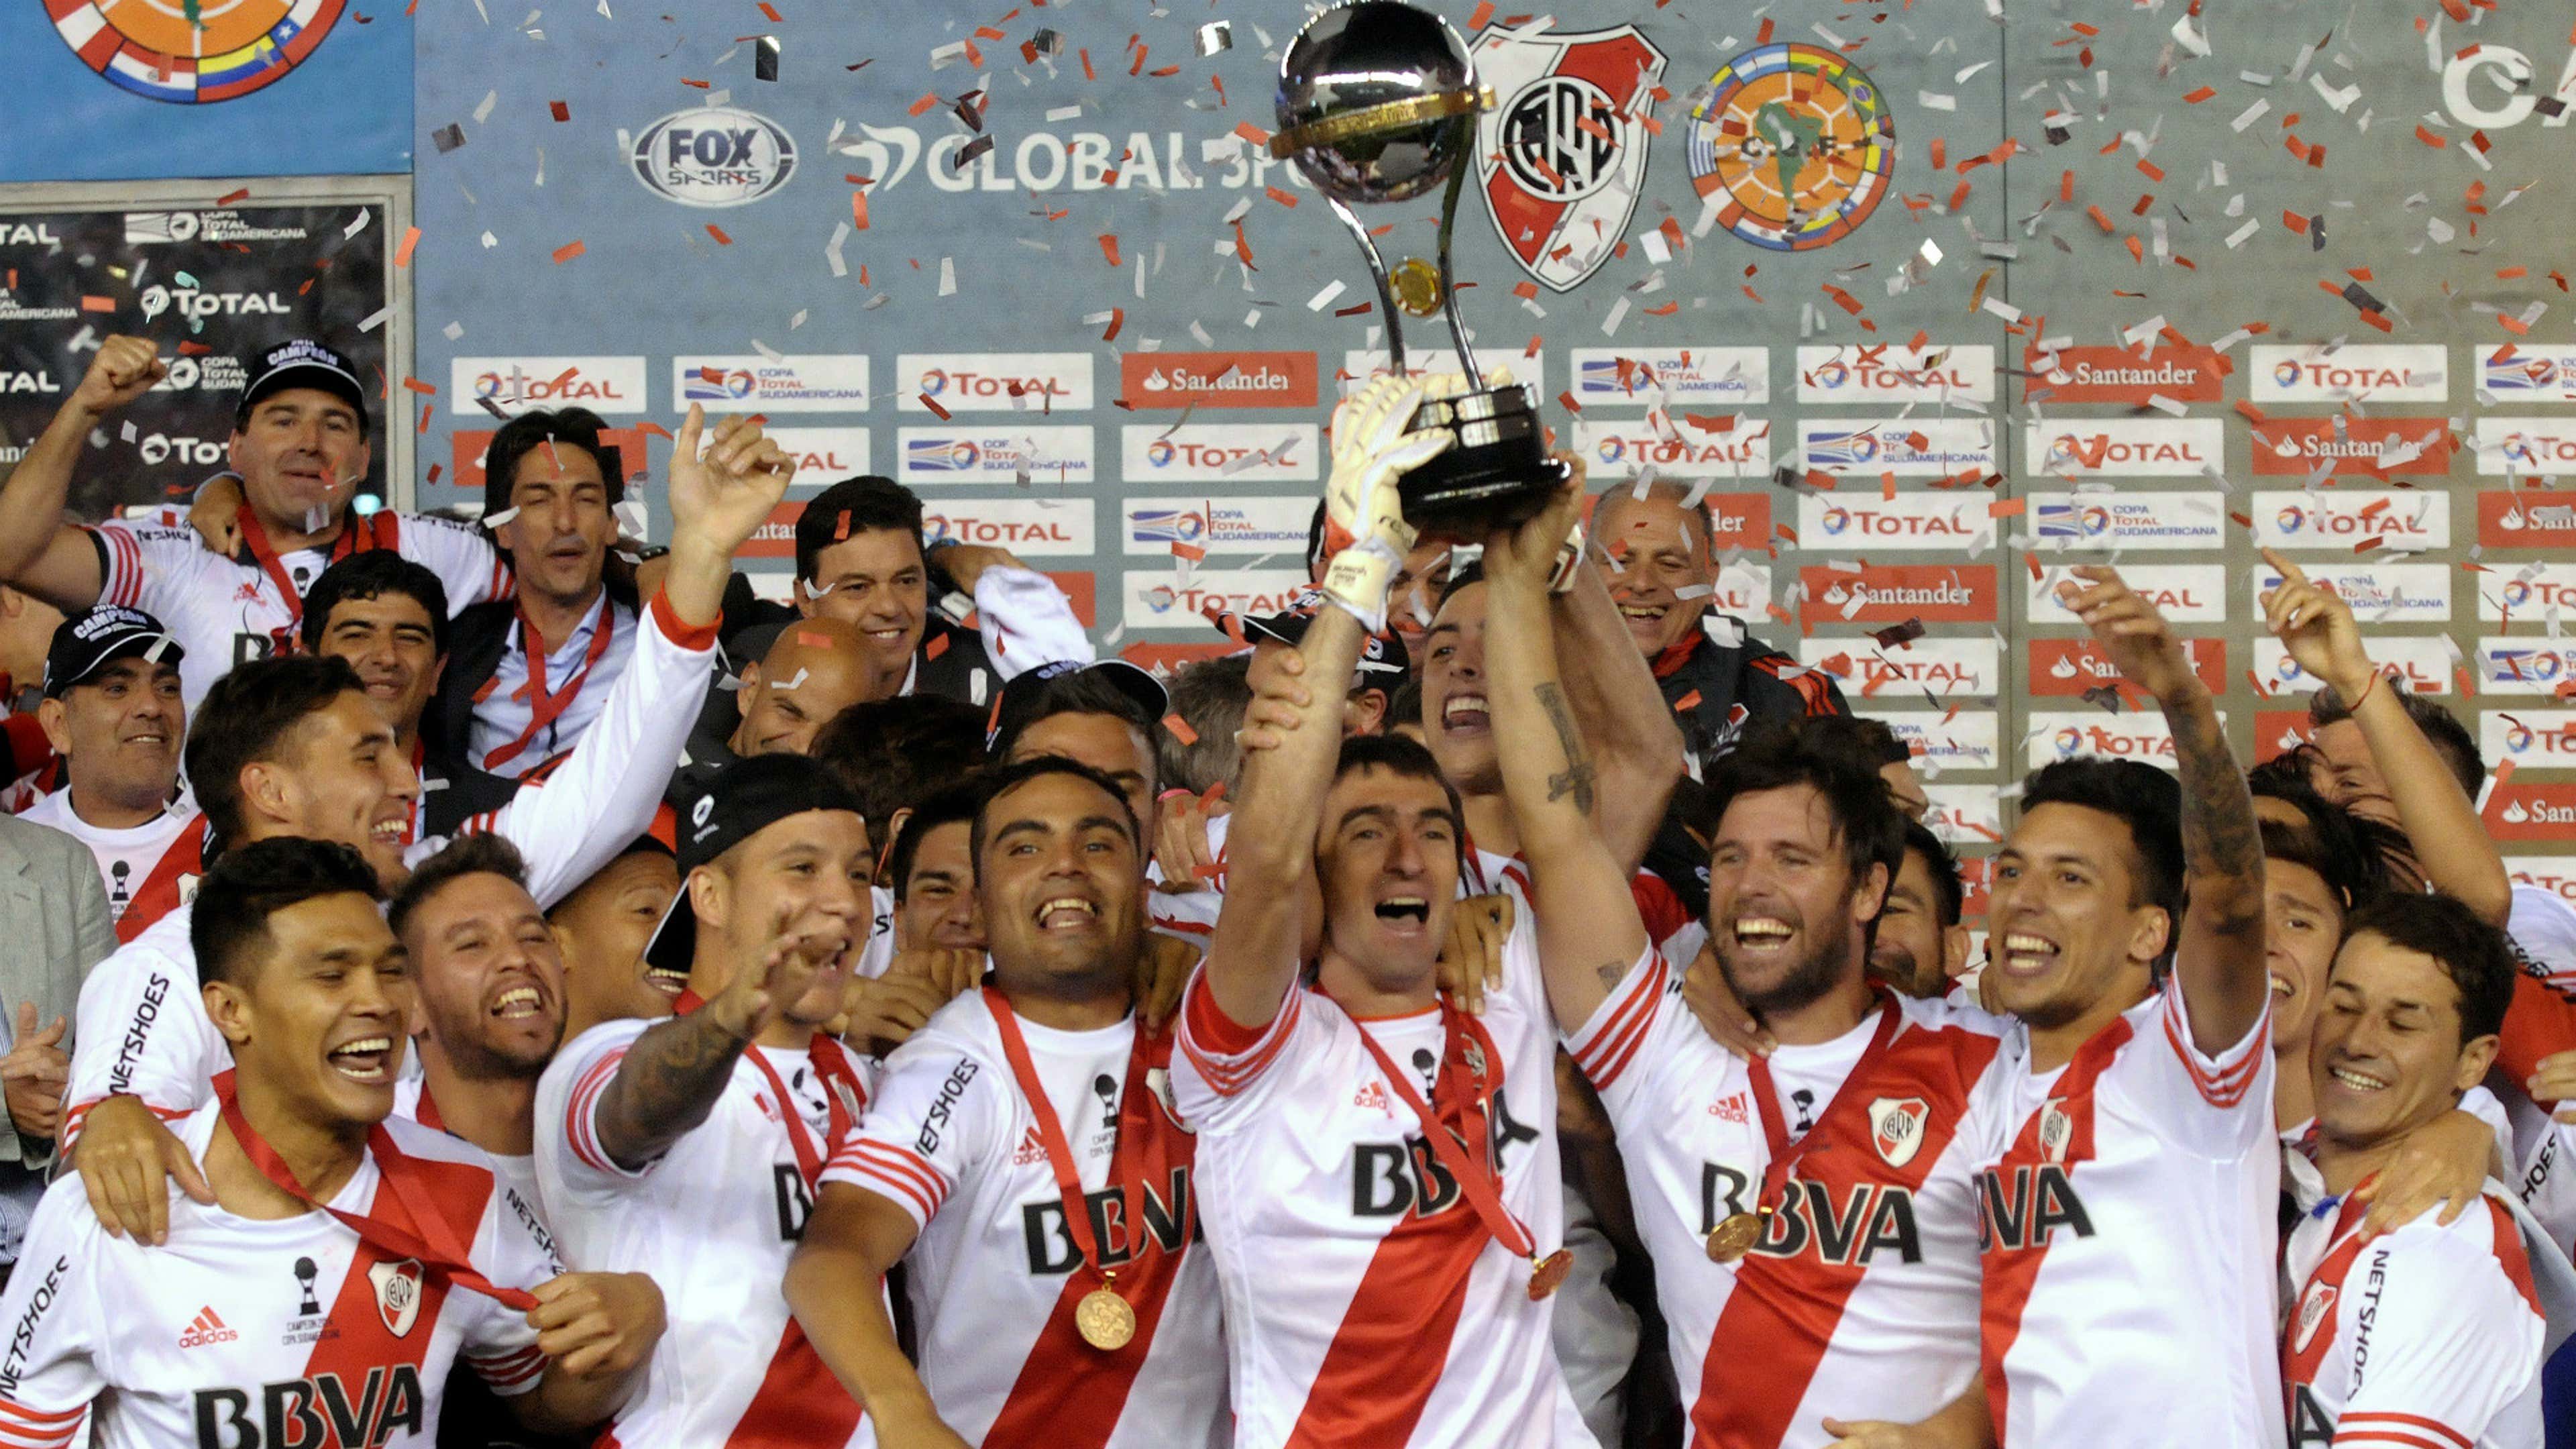 River Plate - Copa Sudamericana 2014